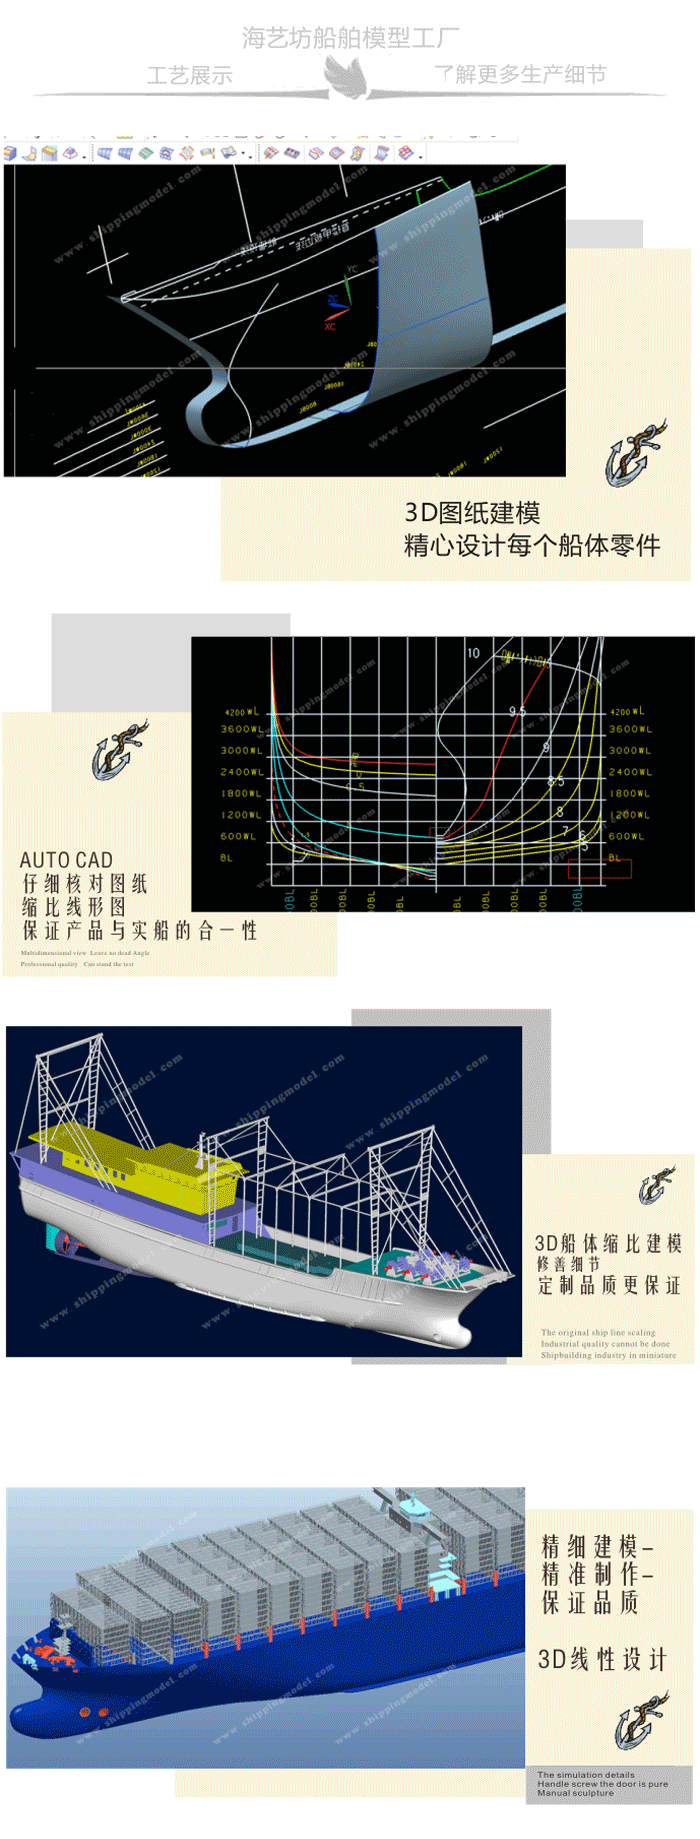 40cm渔船模型定制C